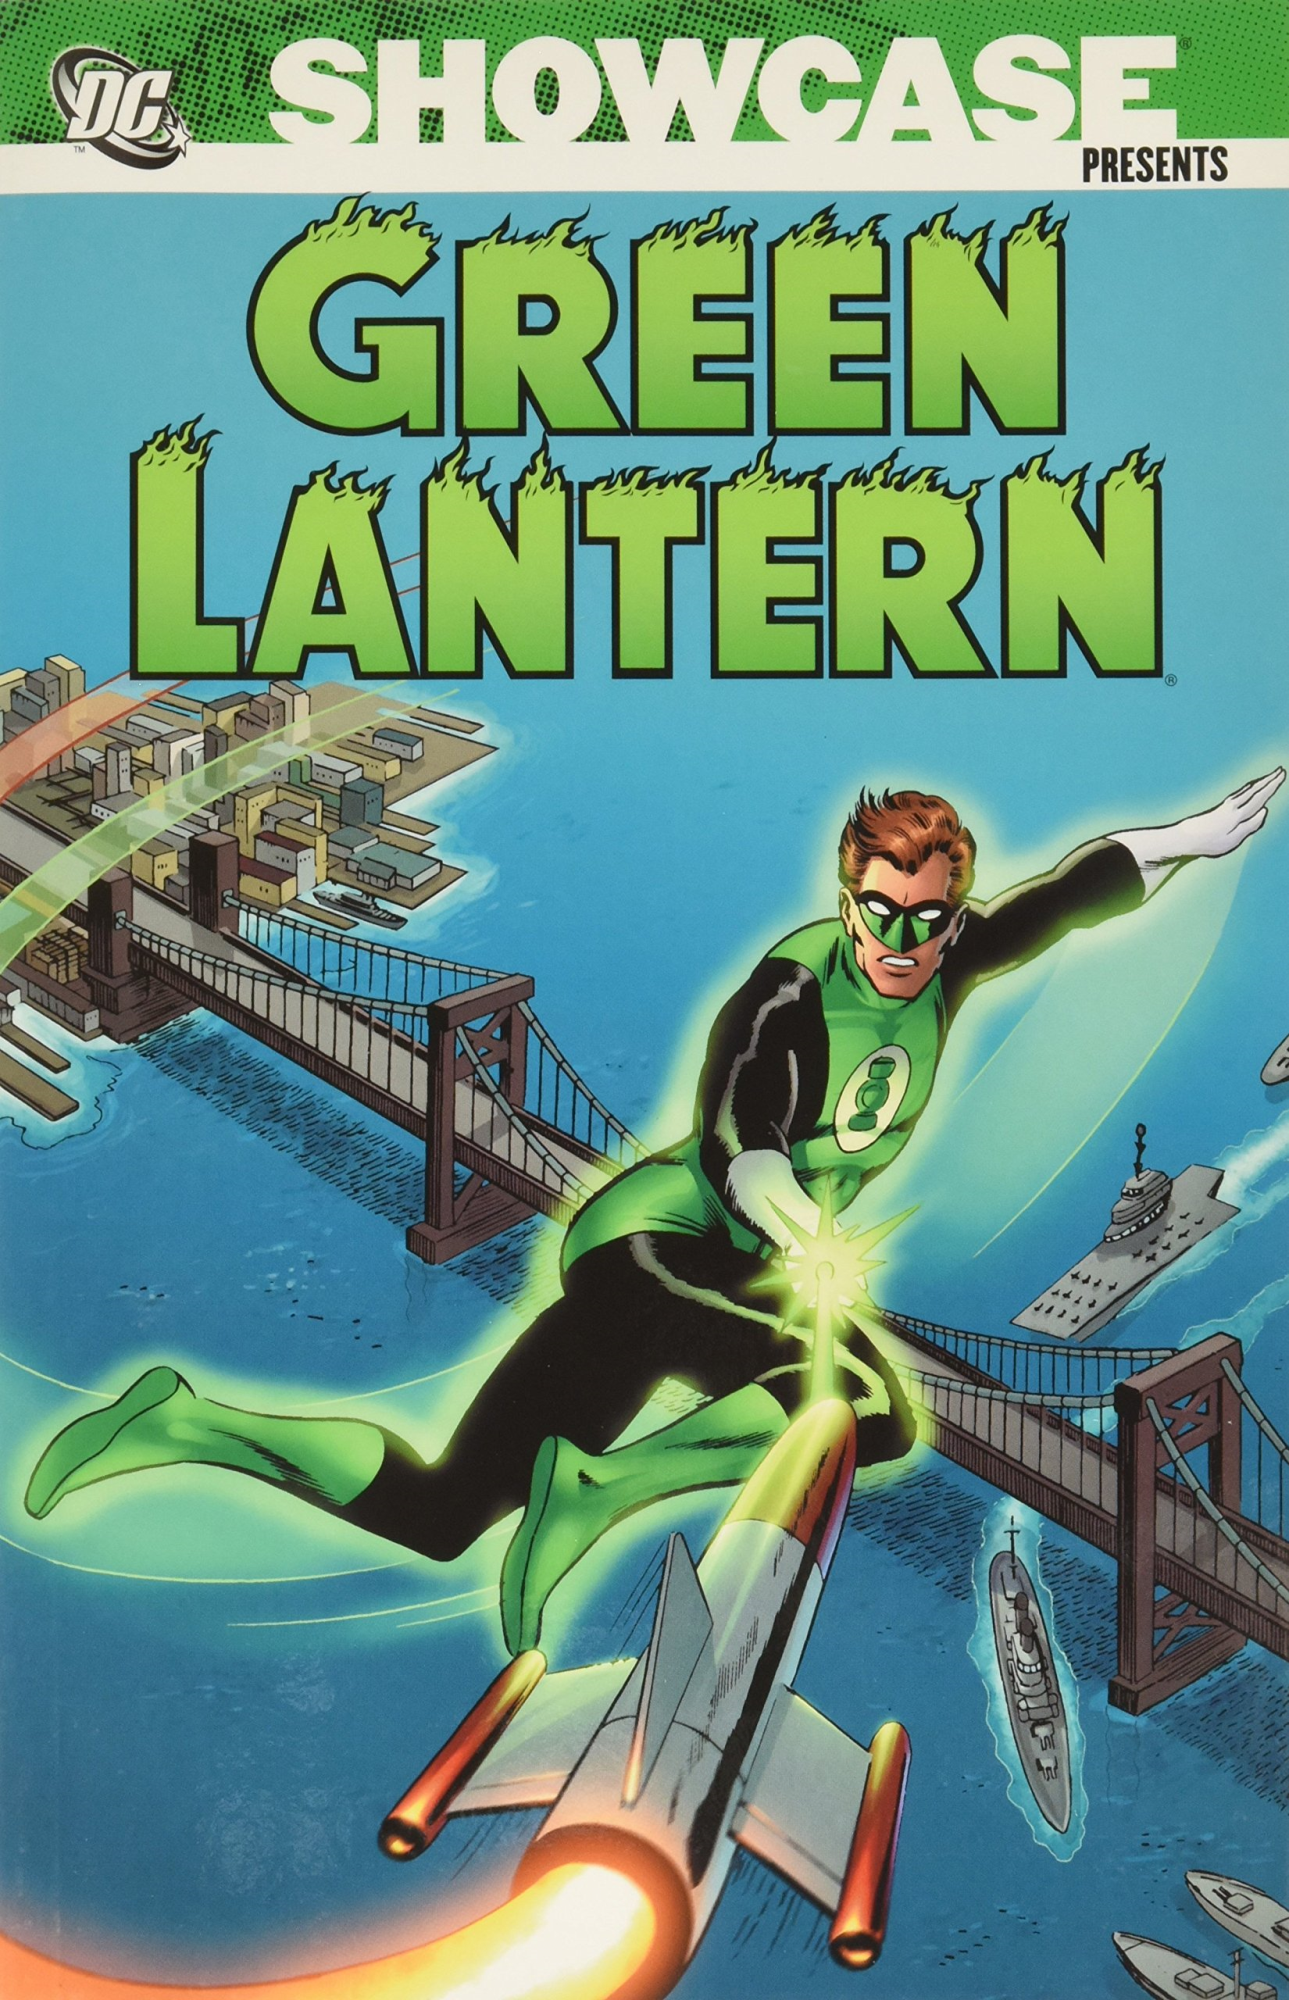 Libri DC Showcase Presenta: Lanterna Verde Vol 01 NUOVO SIGILLATO, EDIZIONE DEL 18/03/2021 SUBITO DISPONIBILE